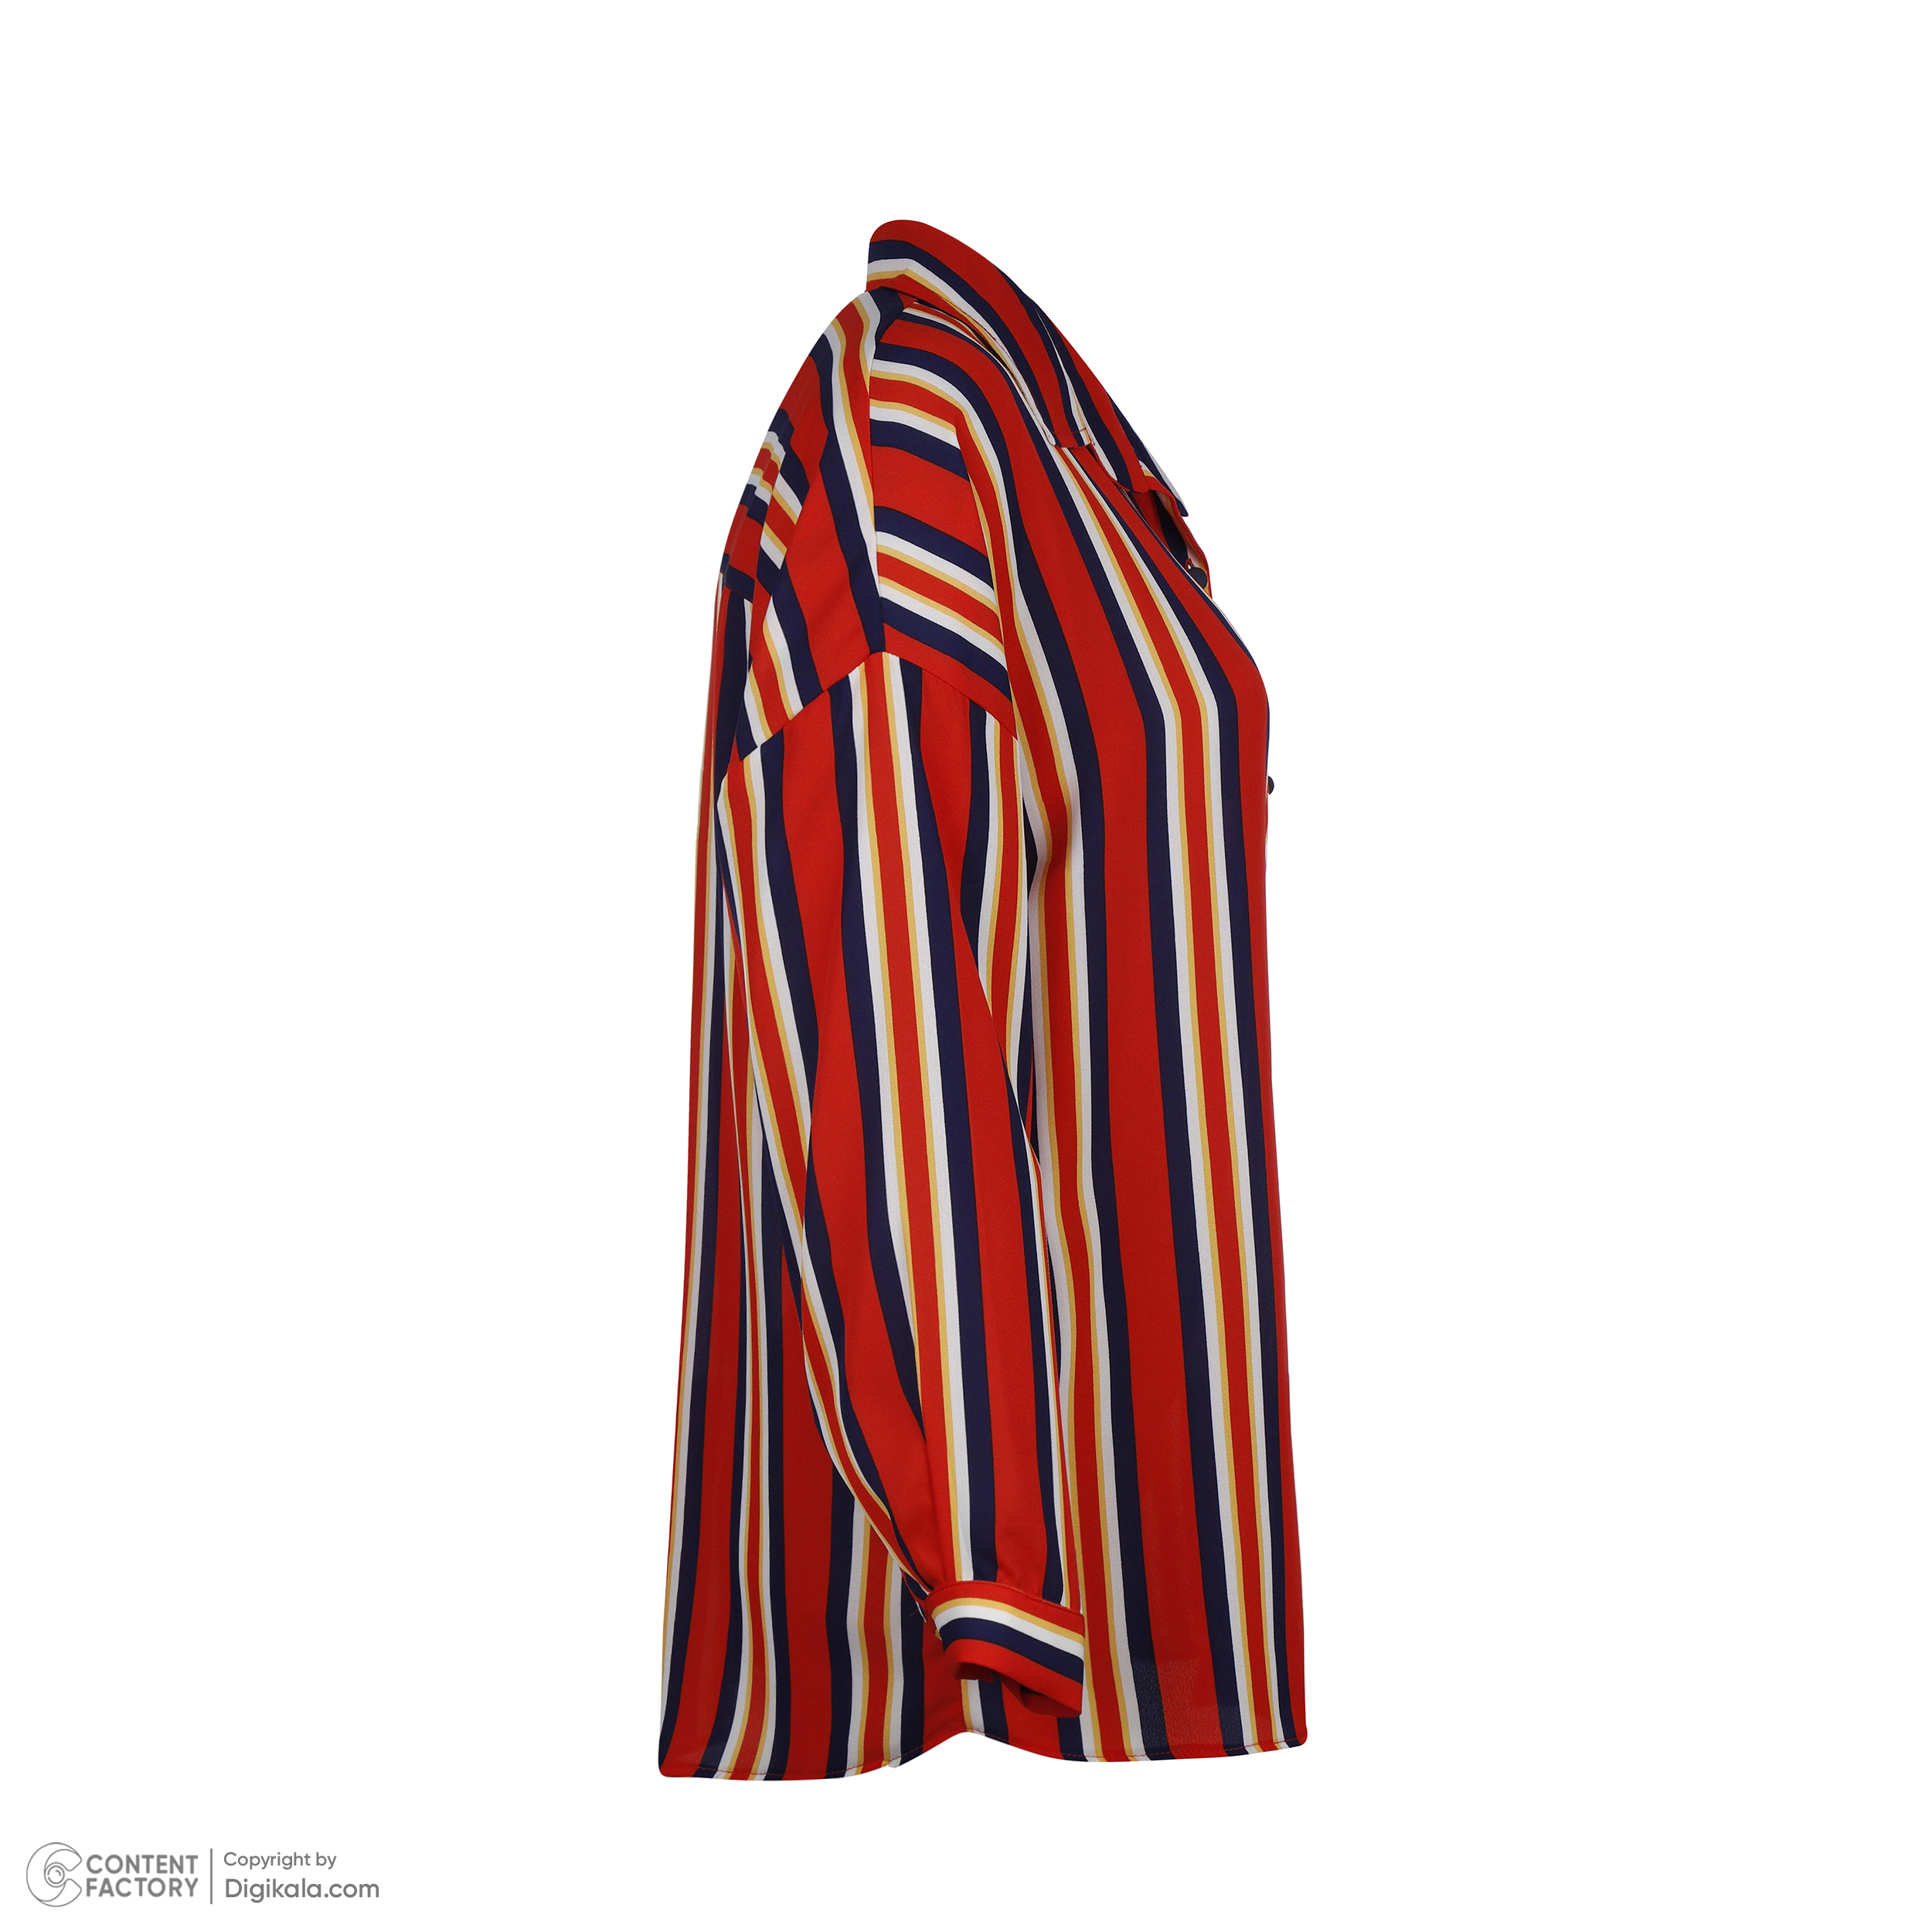 شومیز آستین بلند زنانه نیزل مدل 0971-061 رنگ قرمز -  - 3